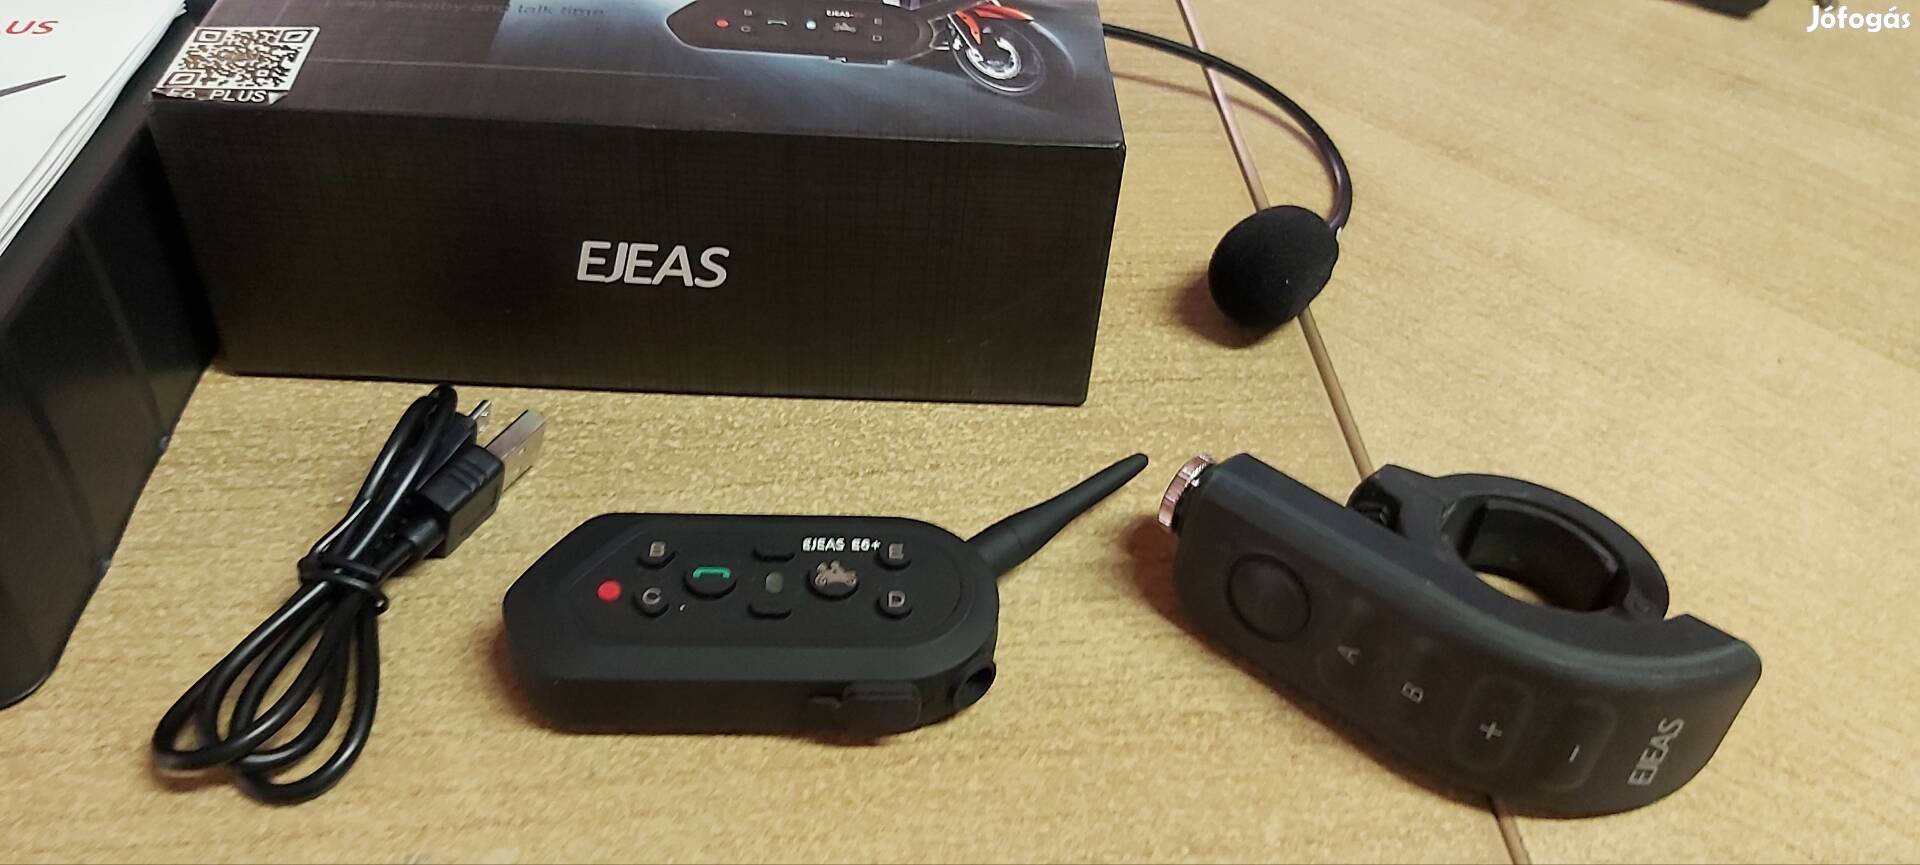 Új Ejeas E6 Motoros bluetooth headset kihangosító 